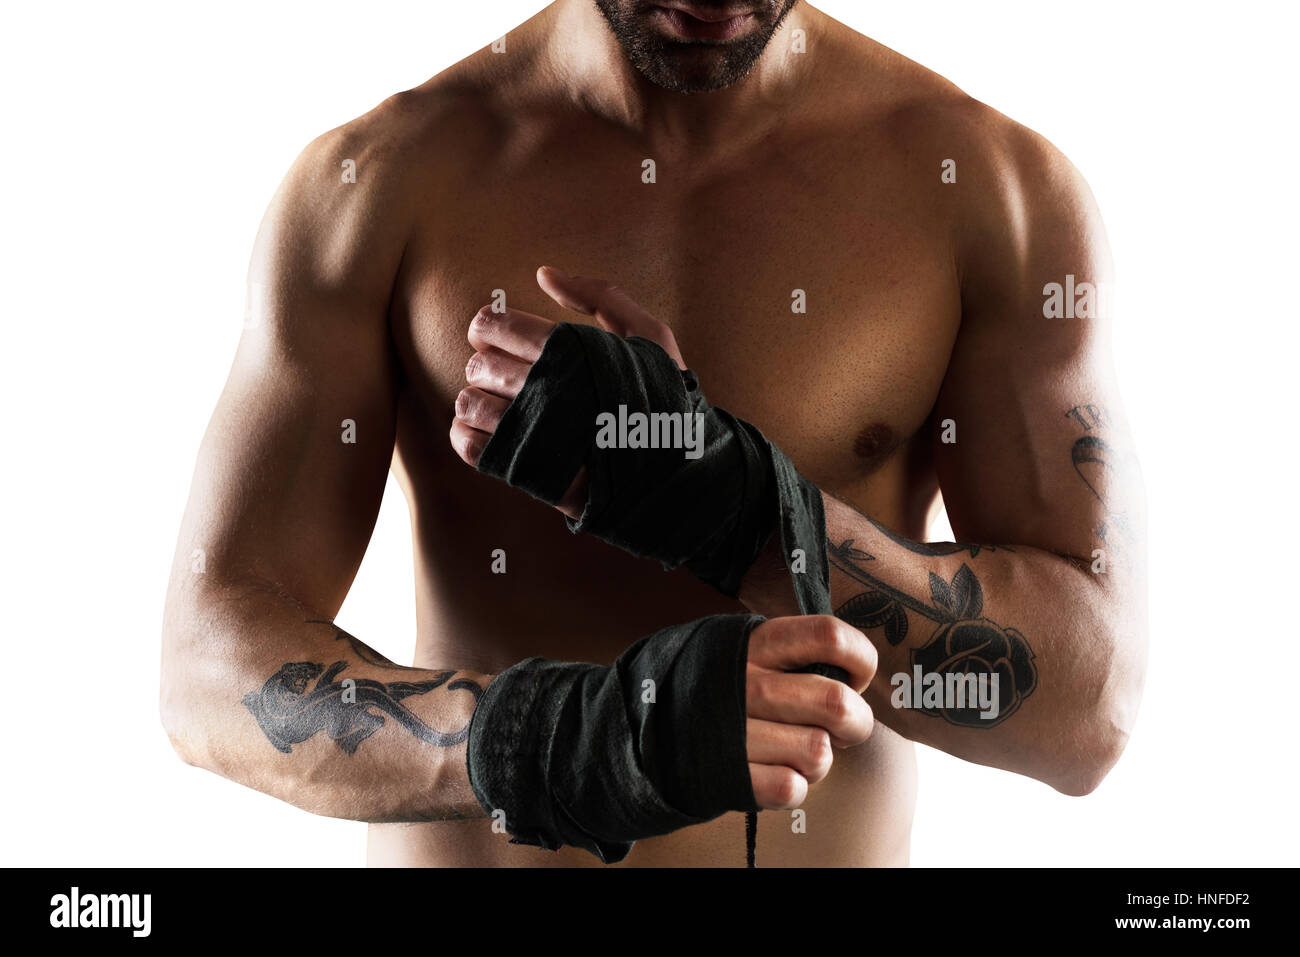 El boxeador coloca las cintas en sus manos Foto de stock